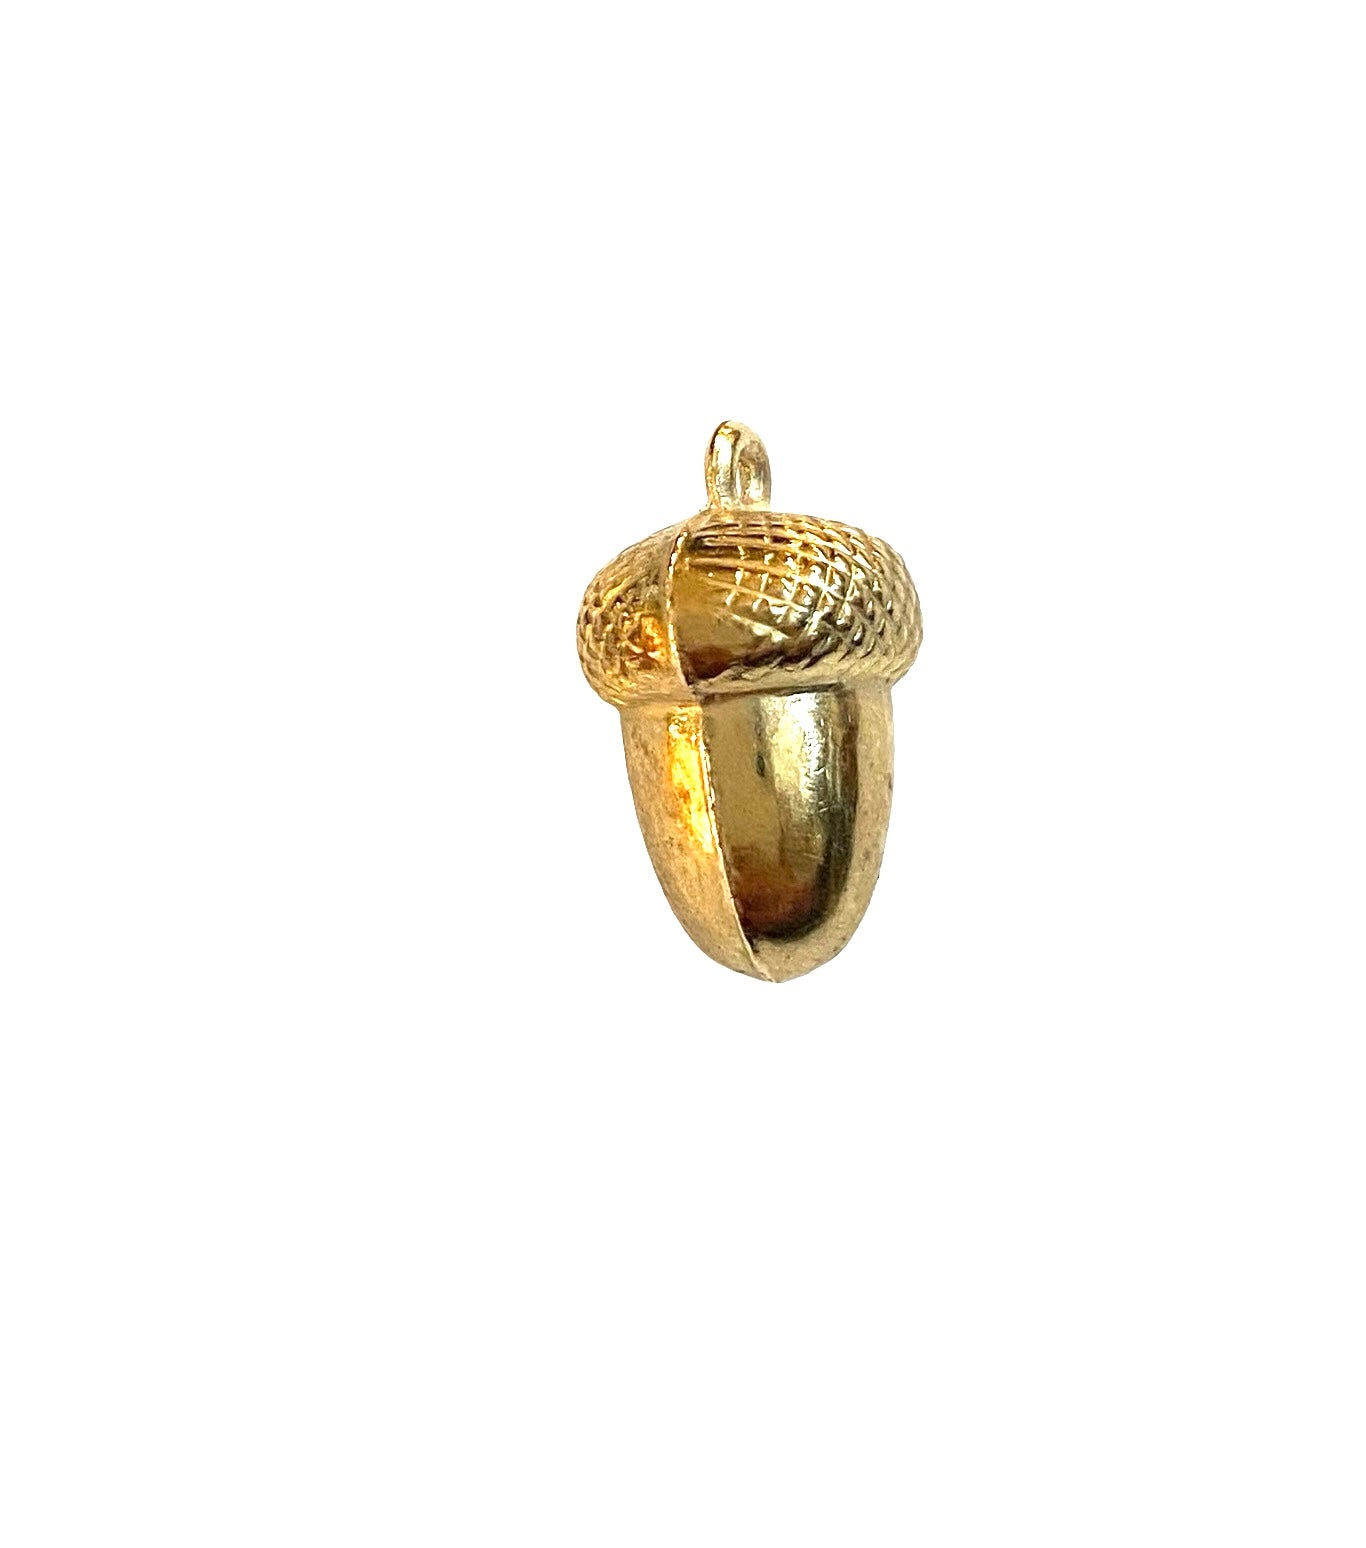 9ct vintage gold acorn charm/ pendant hollow